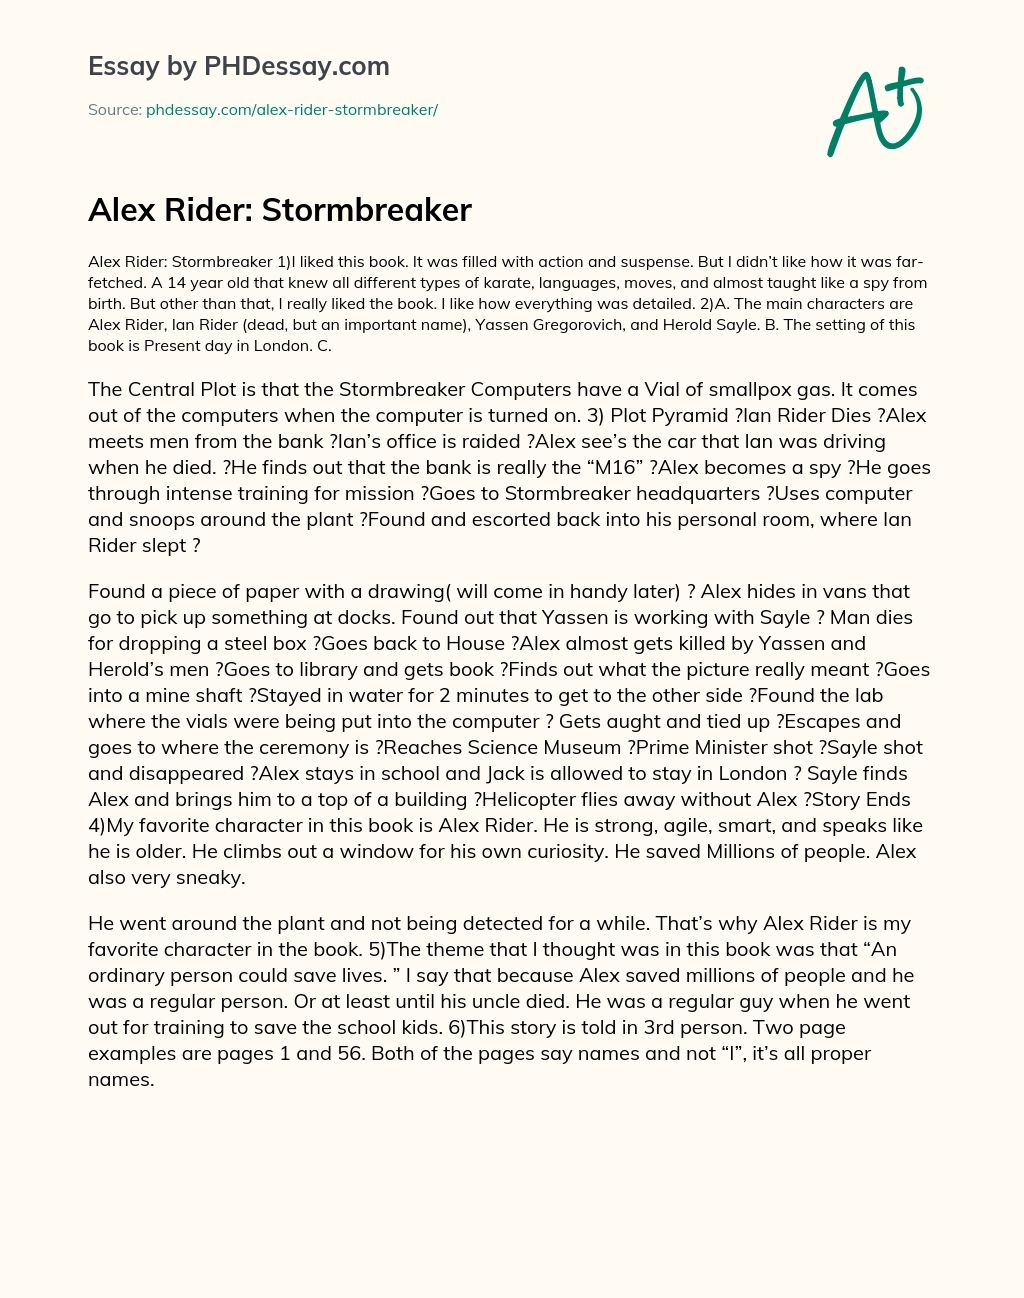 Alex Rider: Stormbreaker essay